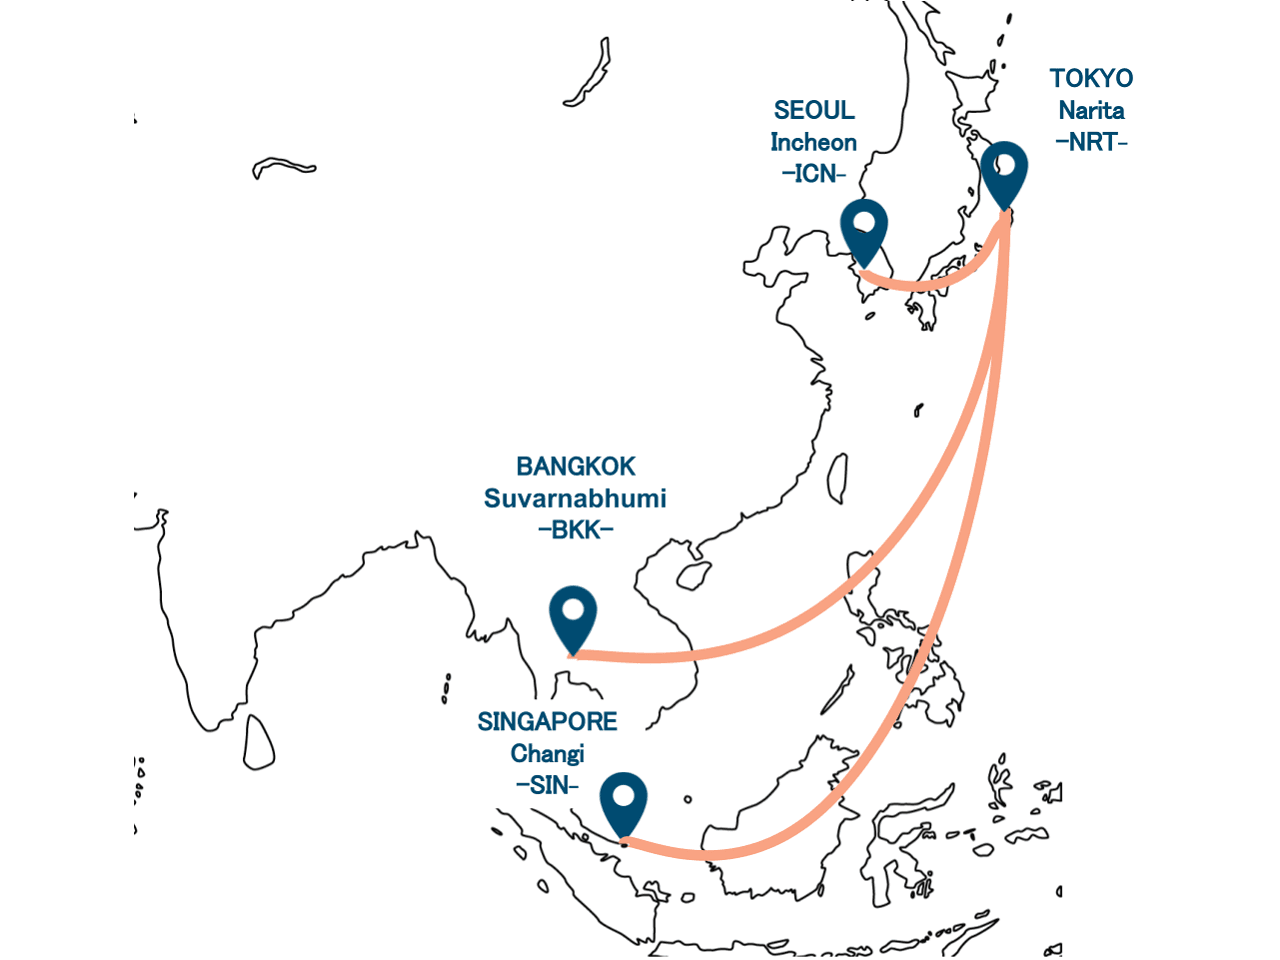 이것은 Airjapan Route Map의 사진입니다. 도쿄 나리타 국제 공항을 기반으로, 우리는 방콕 스완 나피 국제 공항 라인과 Soulincheon 국제 공항을 라인으로 연결합니다.